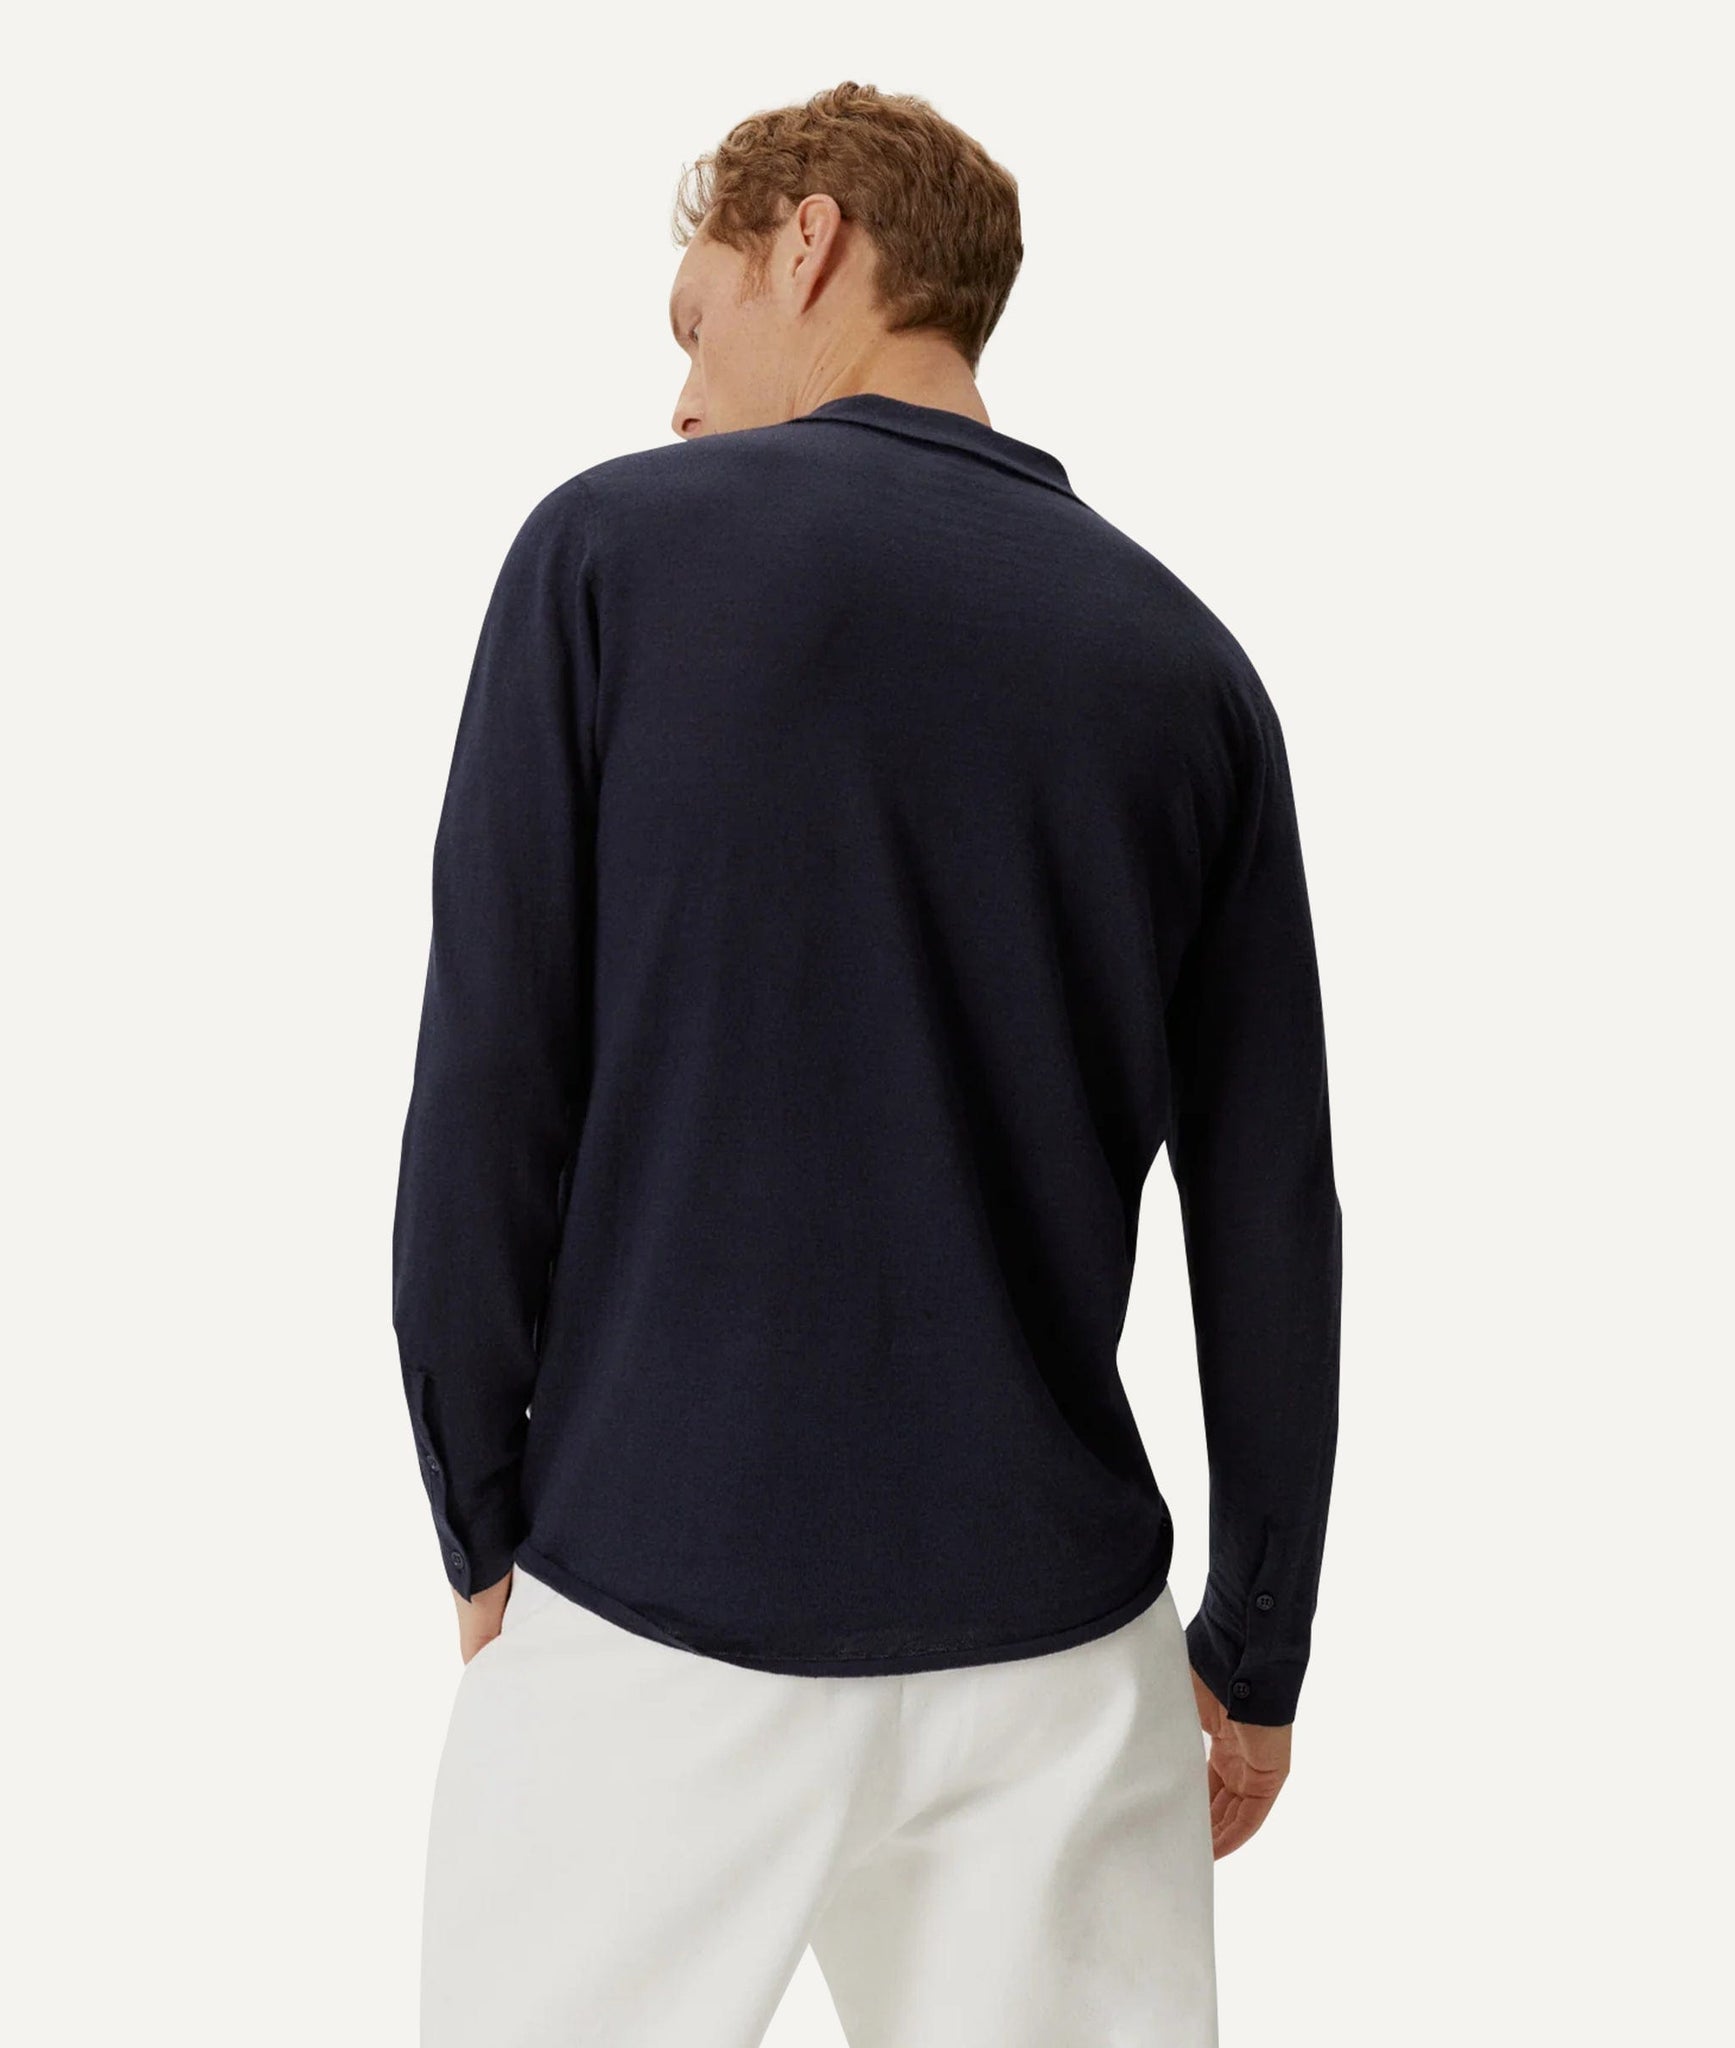 The Linen Cotton Knit Shirt - Blue Navy / S